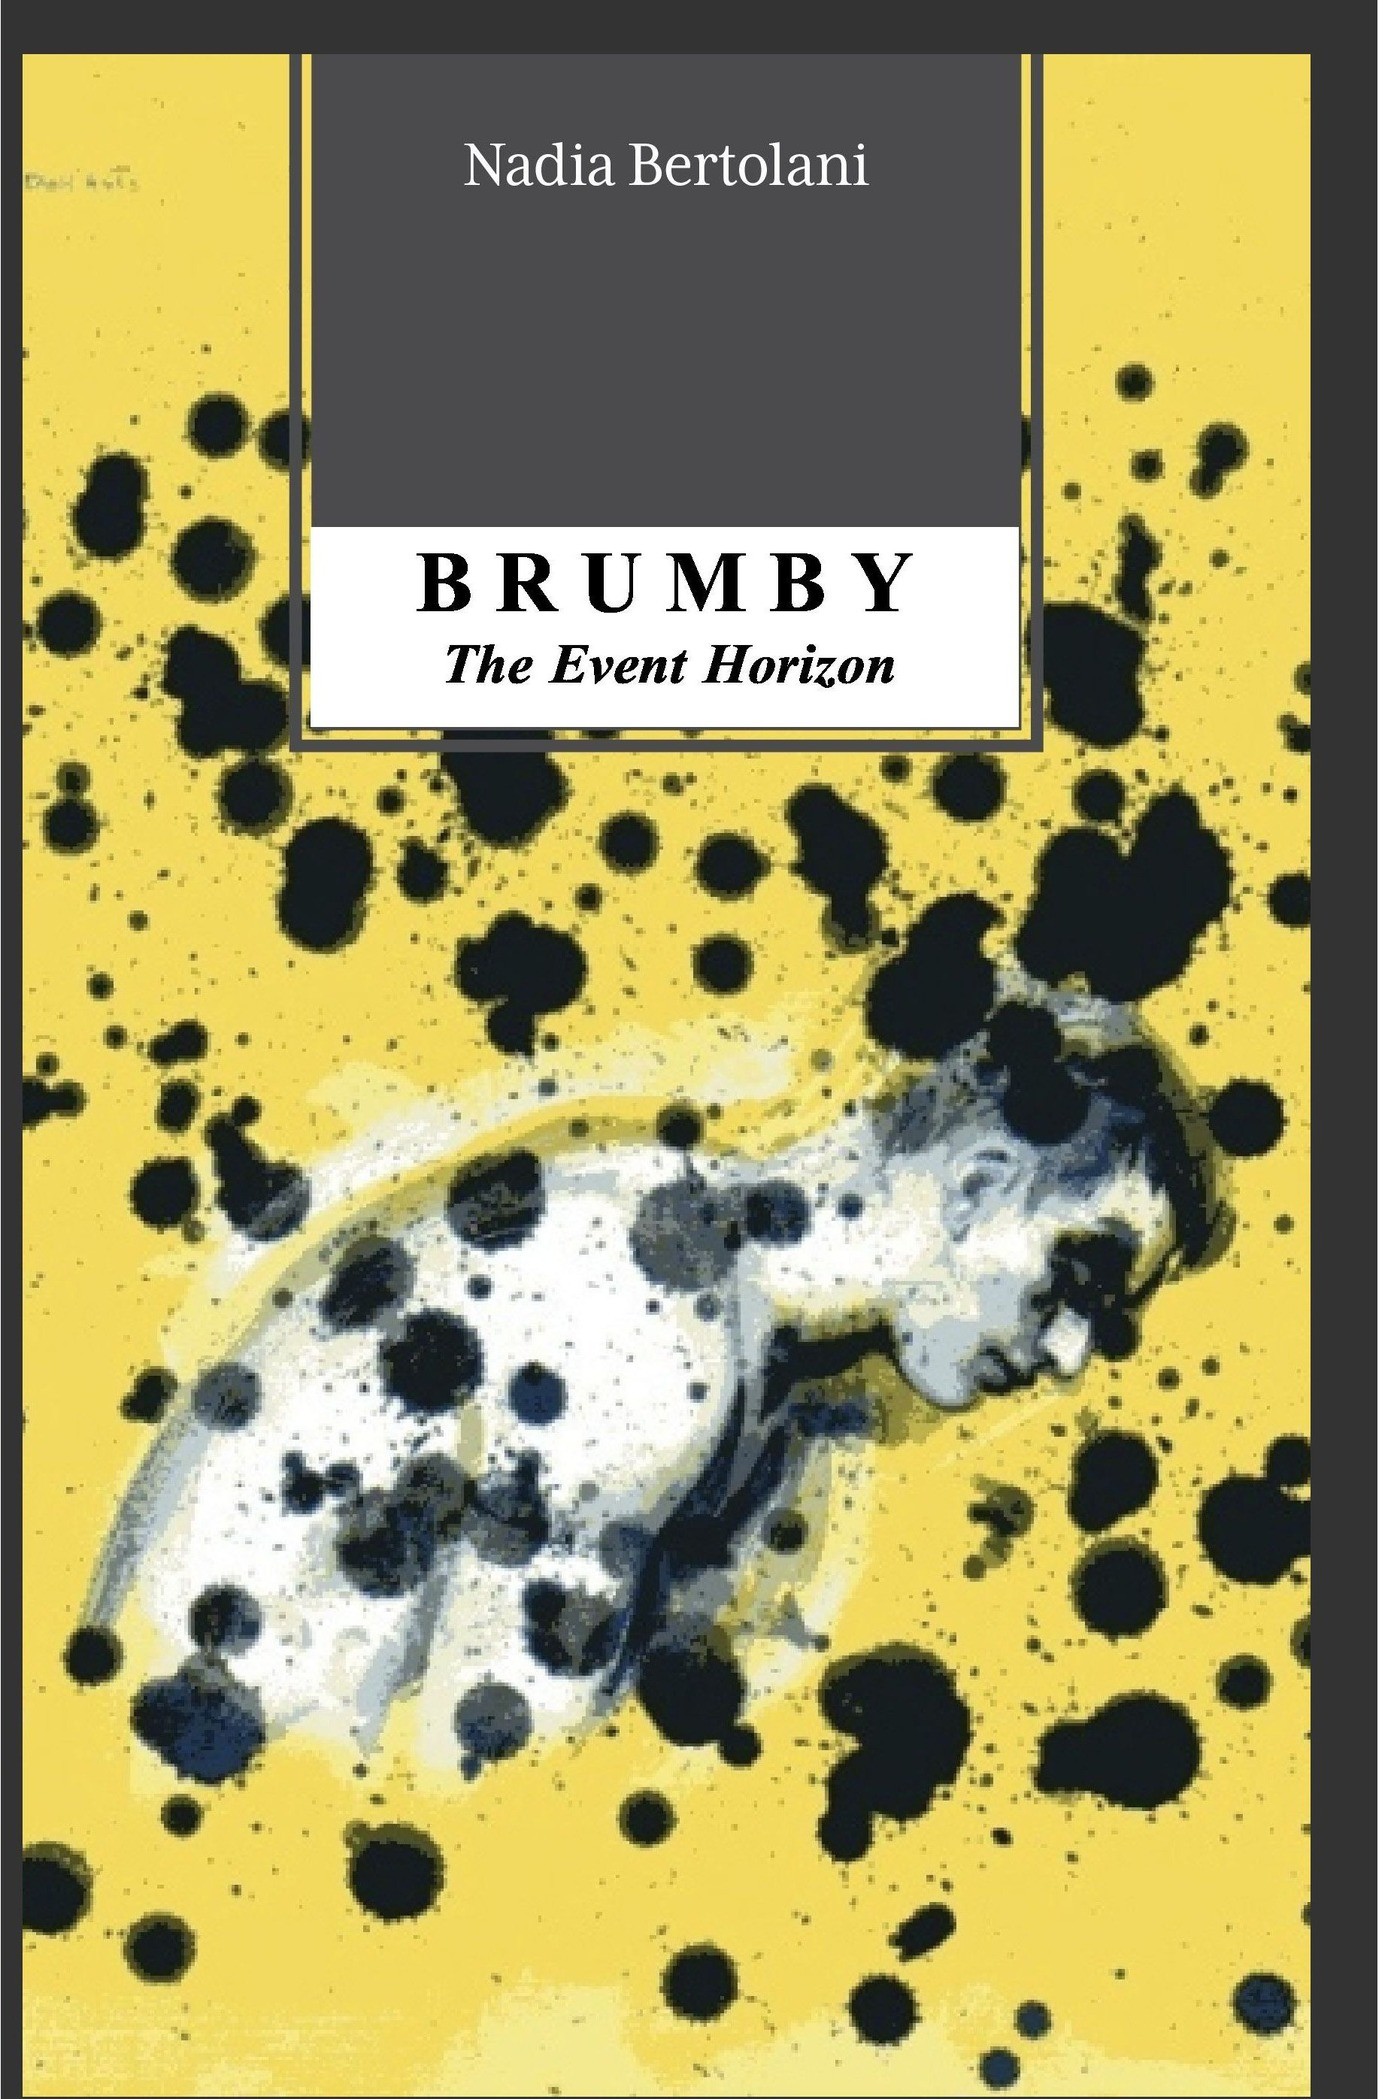 Brumby - Librerie.coop